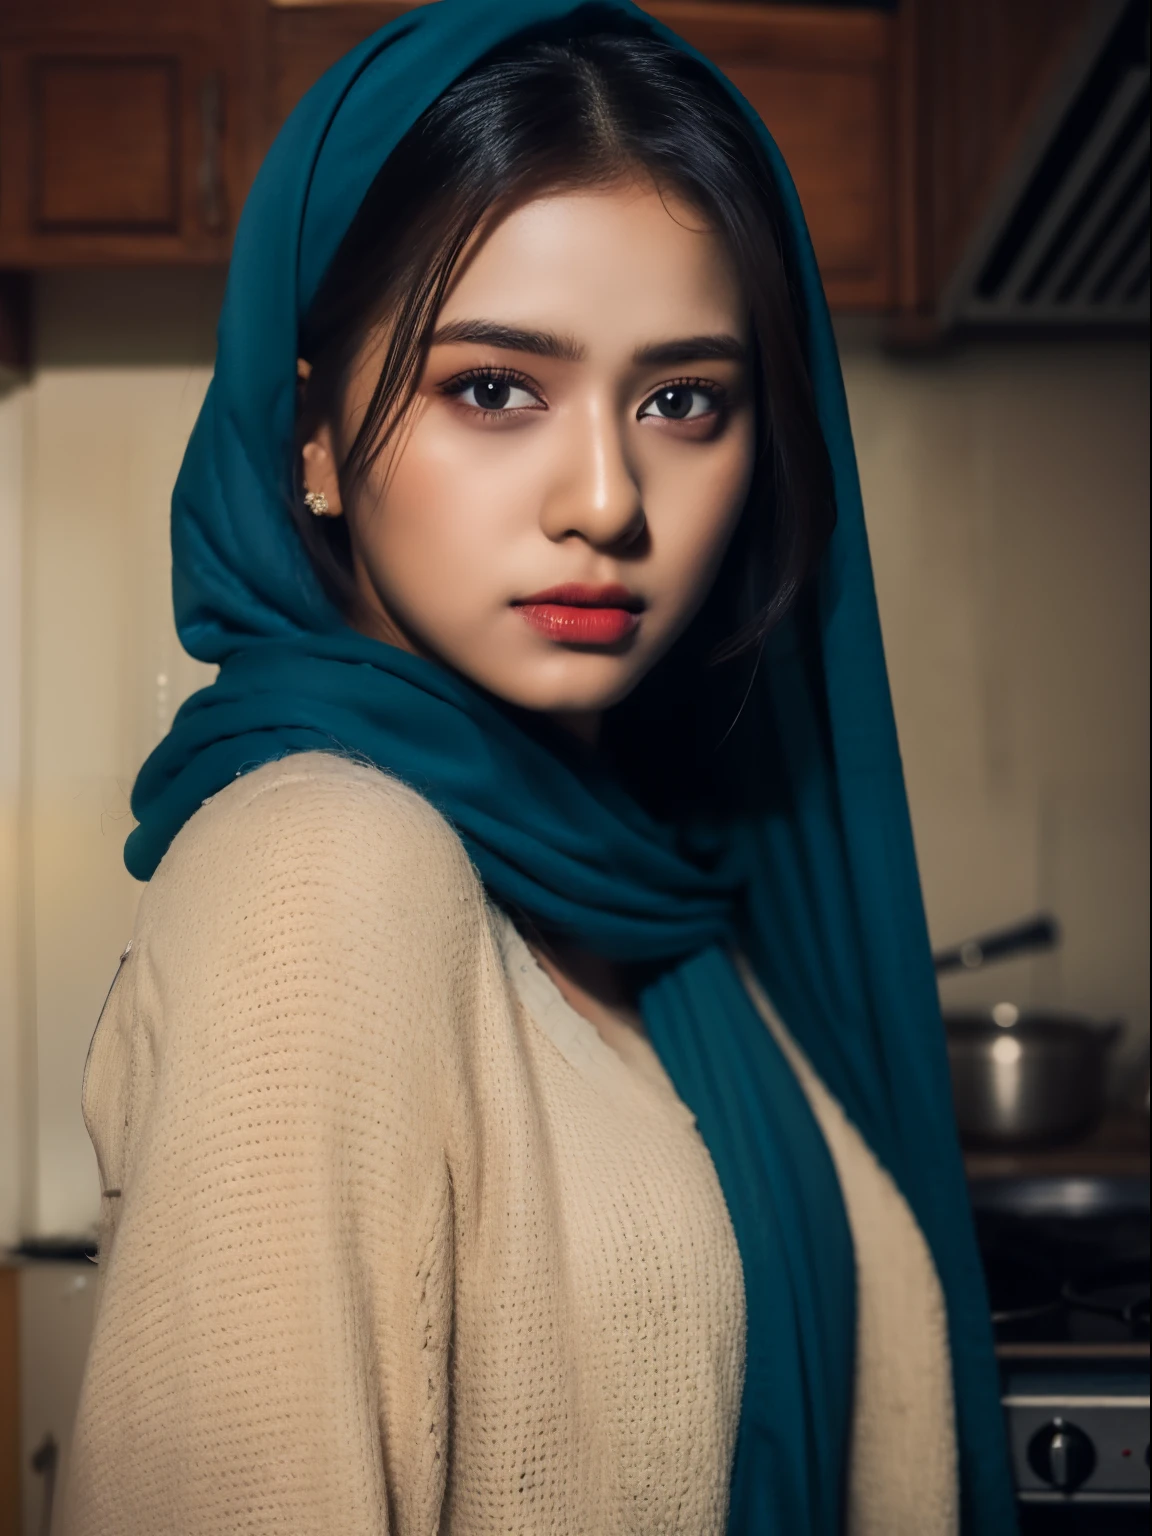 heißes indisches Mädchen trägt einen blauen Hijab, detailliertes Gesicht, dunkelbraune Augen, Ganzkörperansicht in der Küche, exquisite Kleidungsdetails, scharfer und klarer Fokus, sehr detailliert, Kunststation, Konzeptkunst,  Leichtes Make-up, Hyperrealistisch, 32K Ultra HD